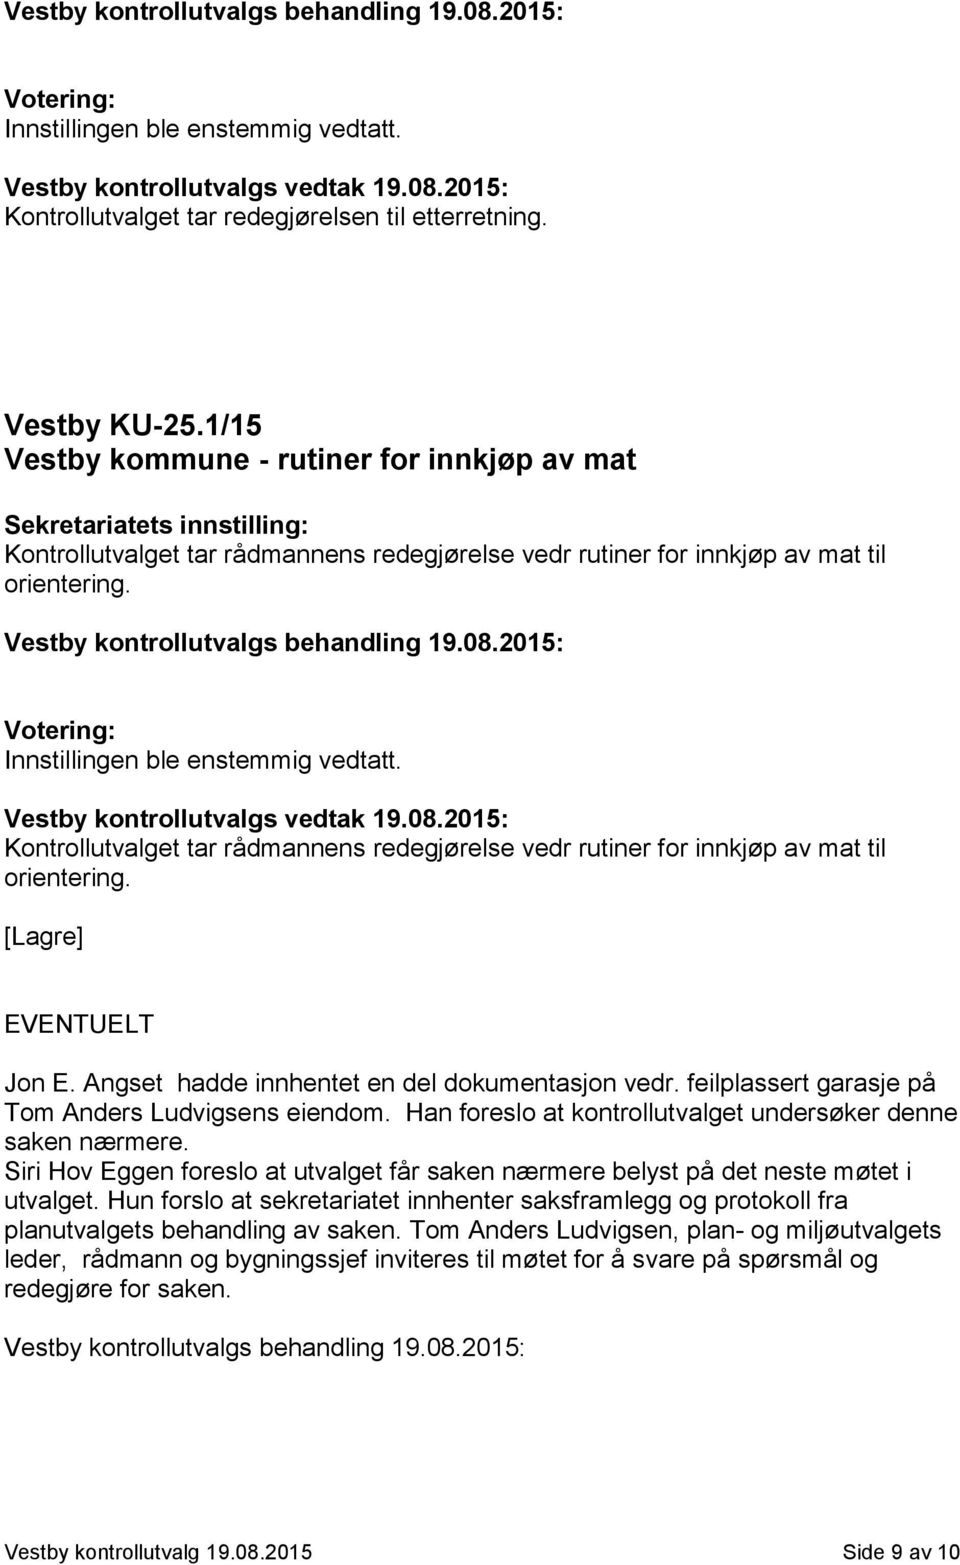 Vestby kontrollutvalgs behandling 19.08.2015: Votering: Innstillingen ble enstemmig vedtatt. Kontrollutvalget tar rådmannens redegjørelse vedr rutiner for innkjøp av mat til orientering.